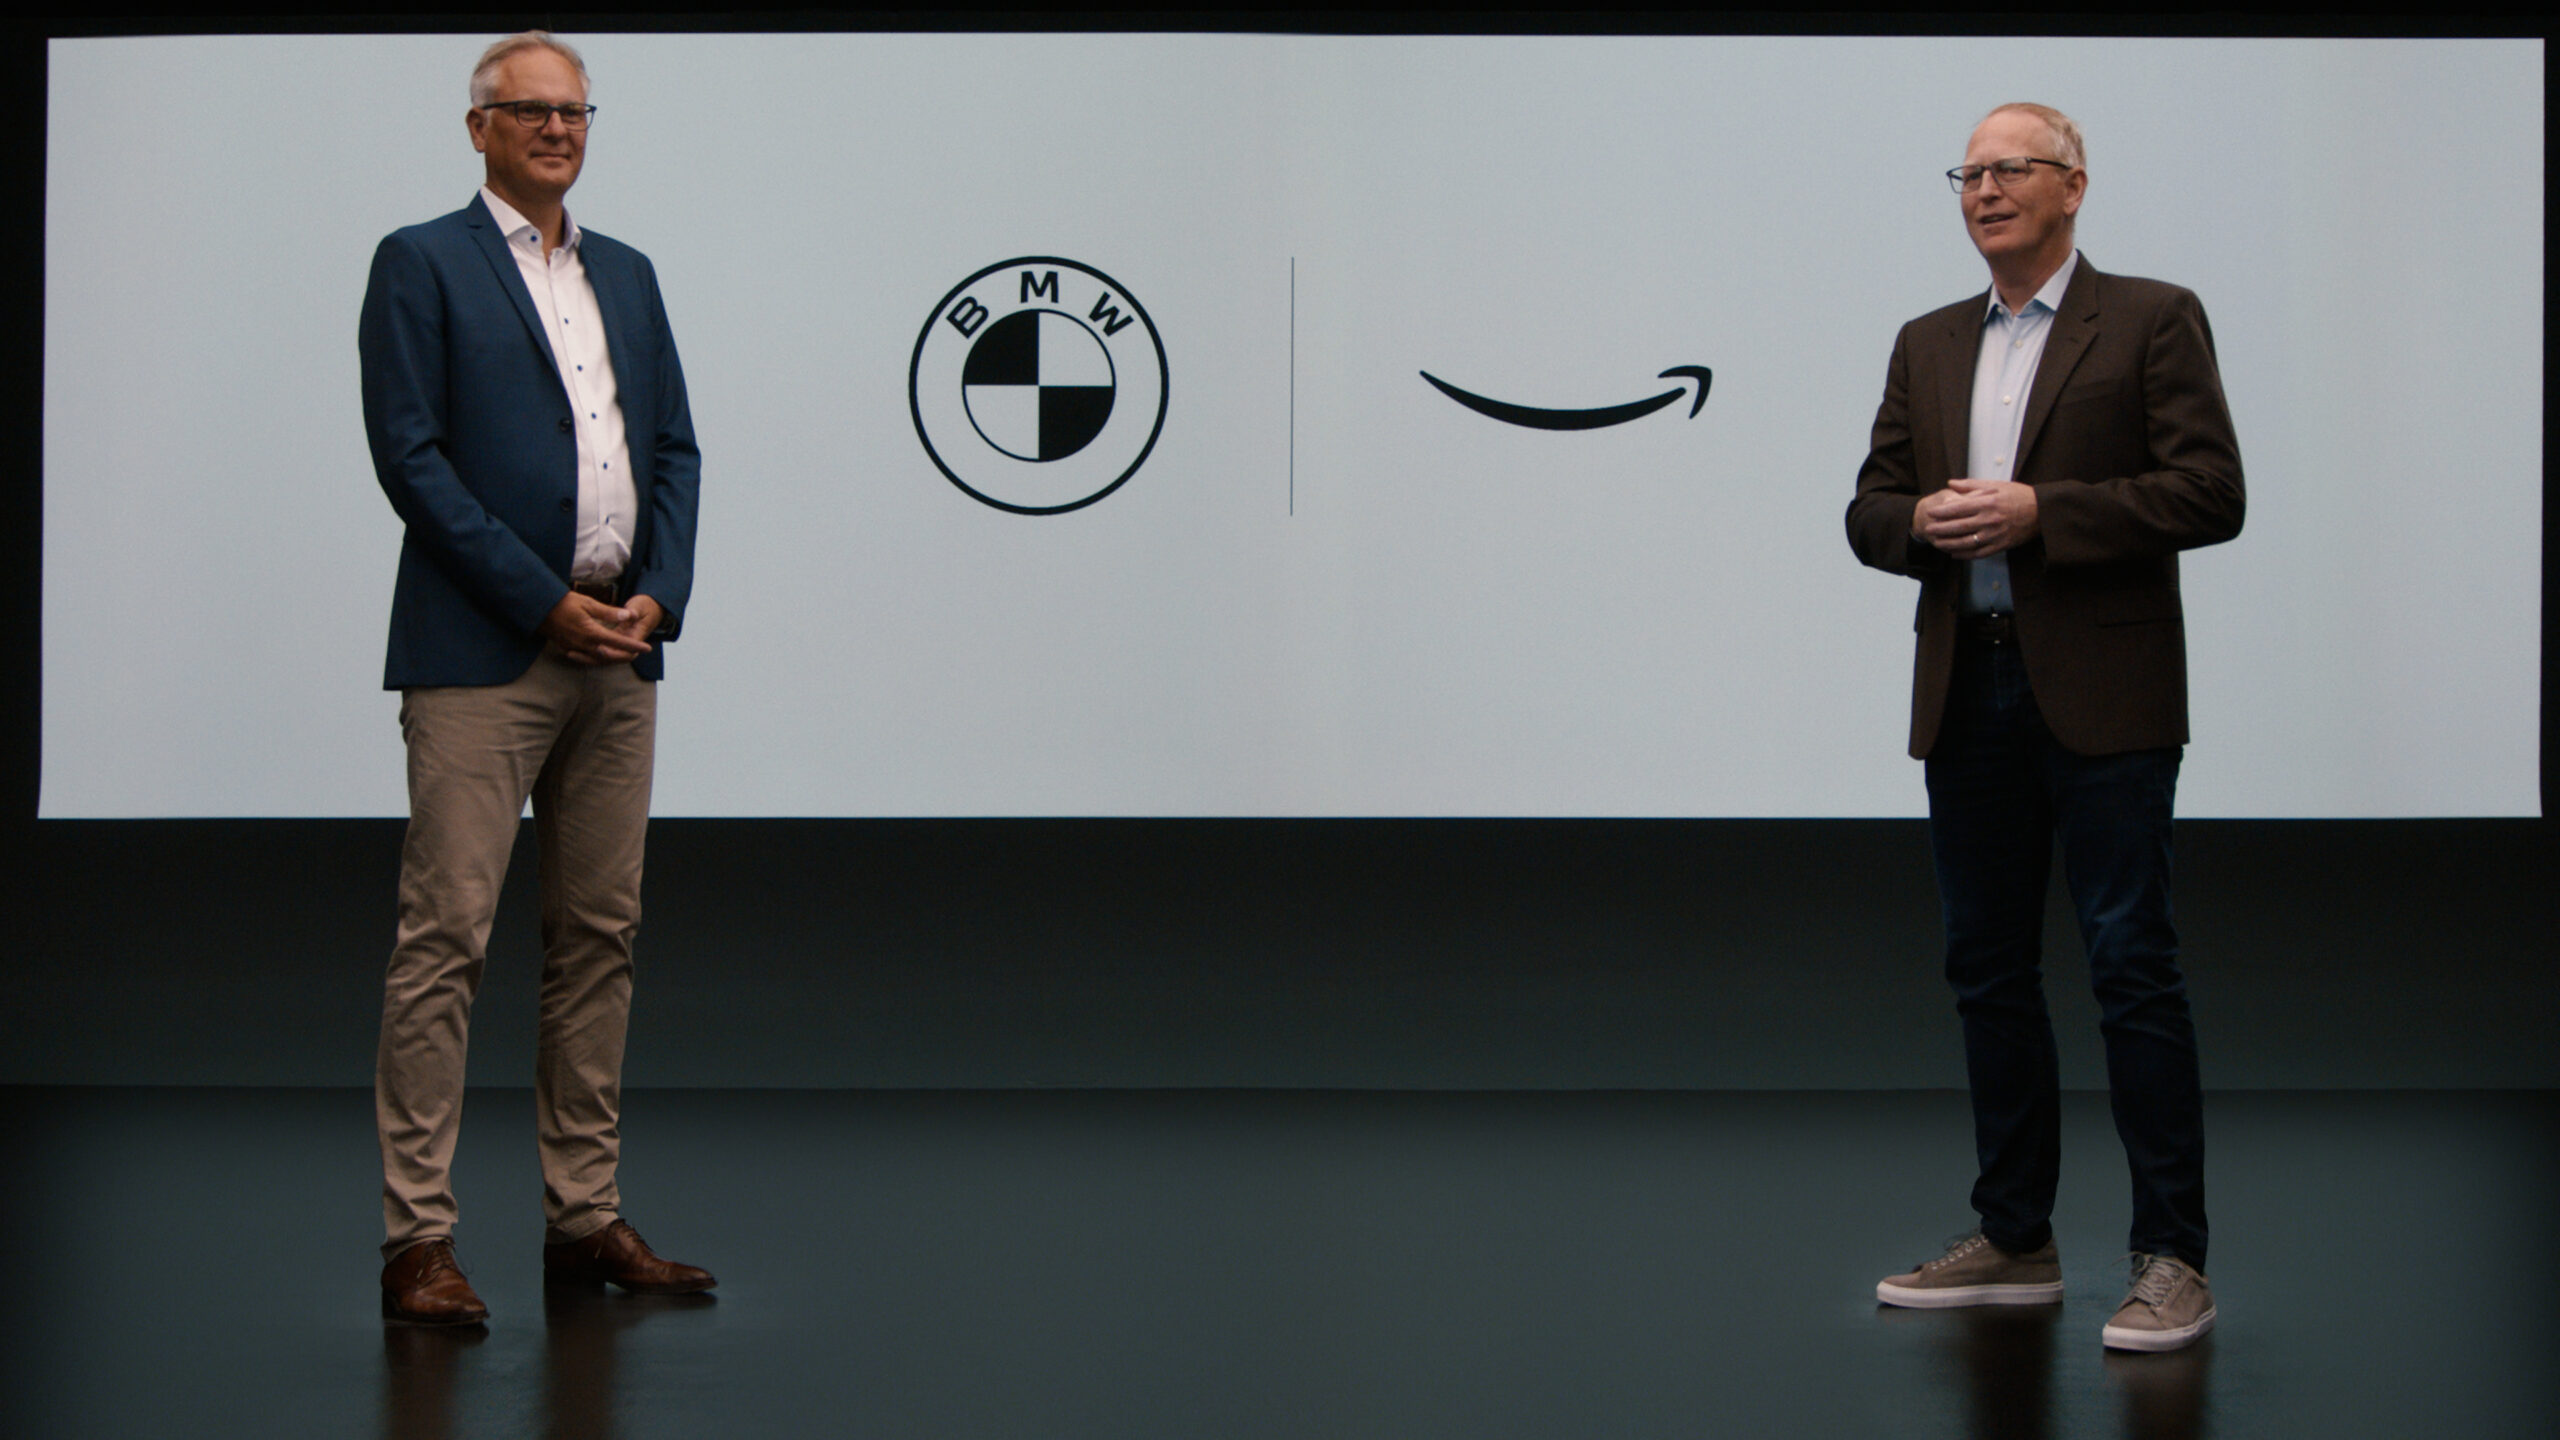 El asistente de voz de BMW de próxima generación se basará en la tecnología de Amazon Alexa